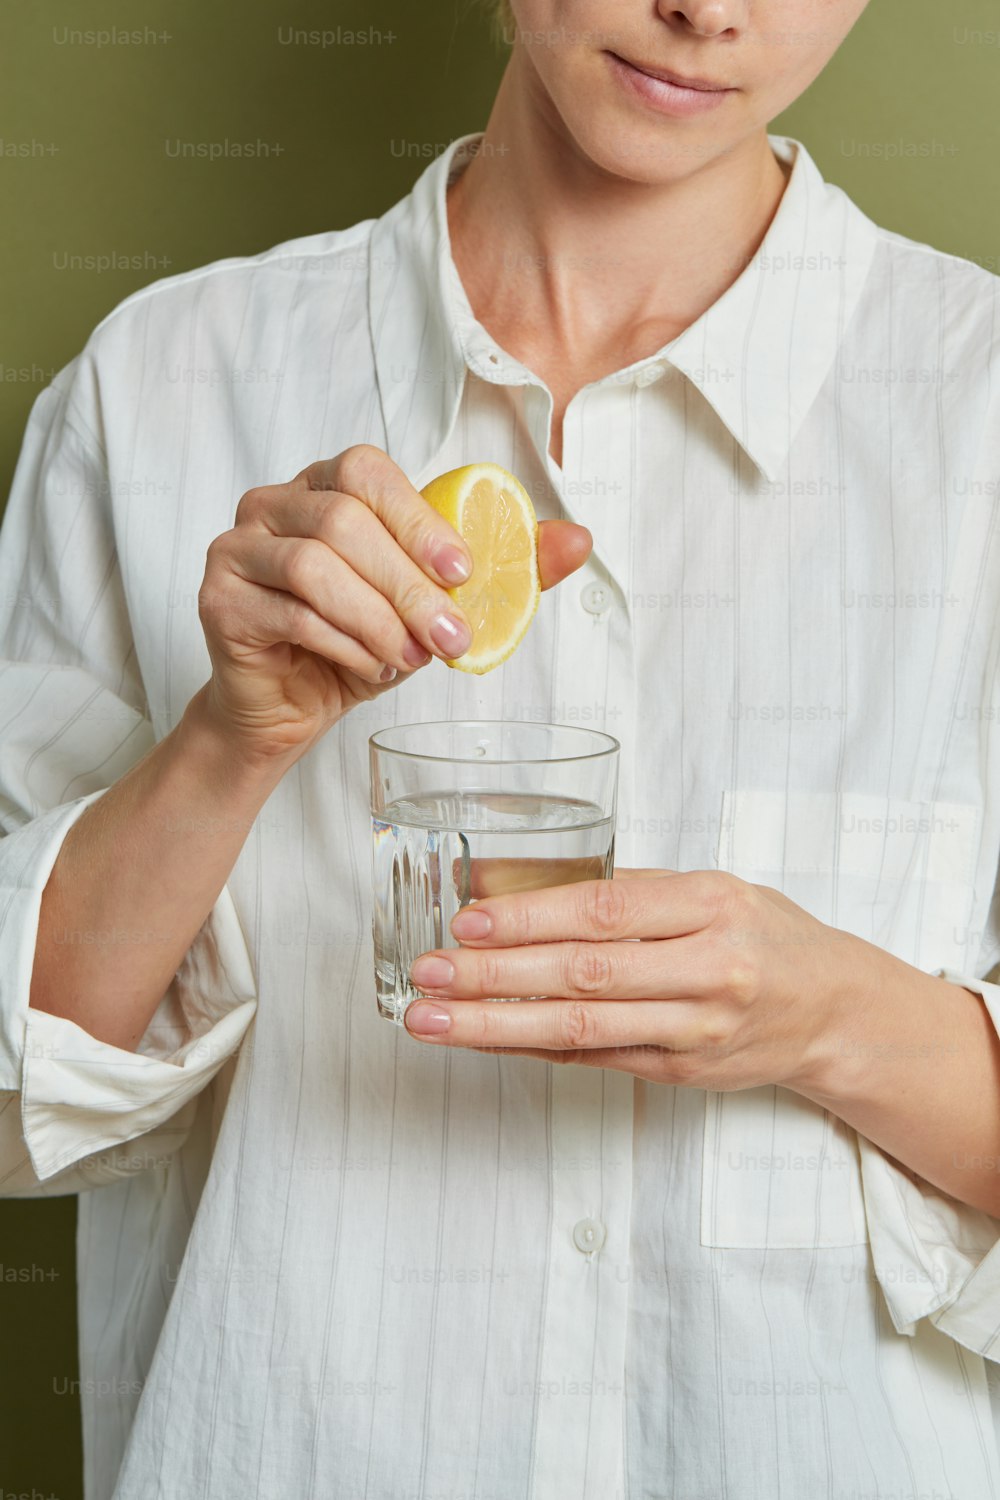 una persona sosteniendo un limón y un vaso de agua